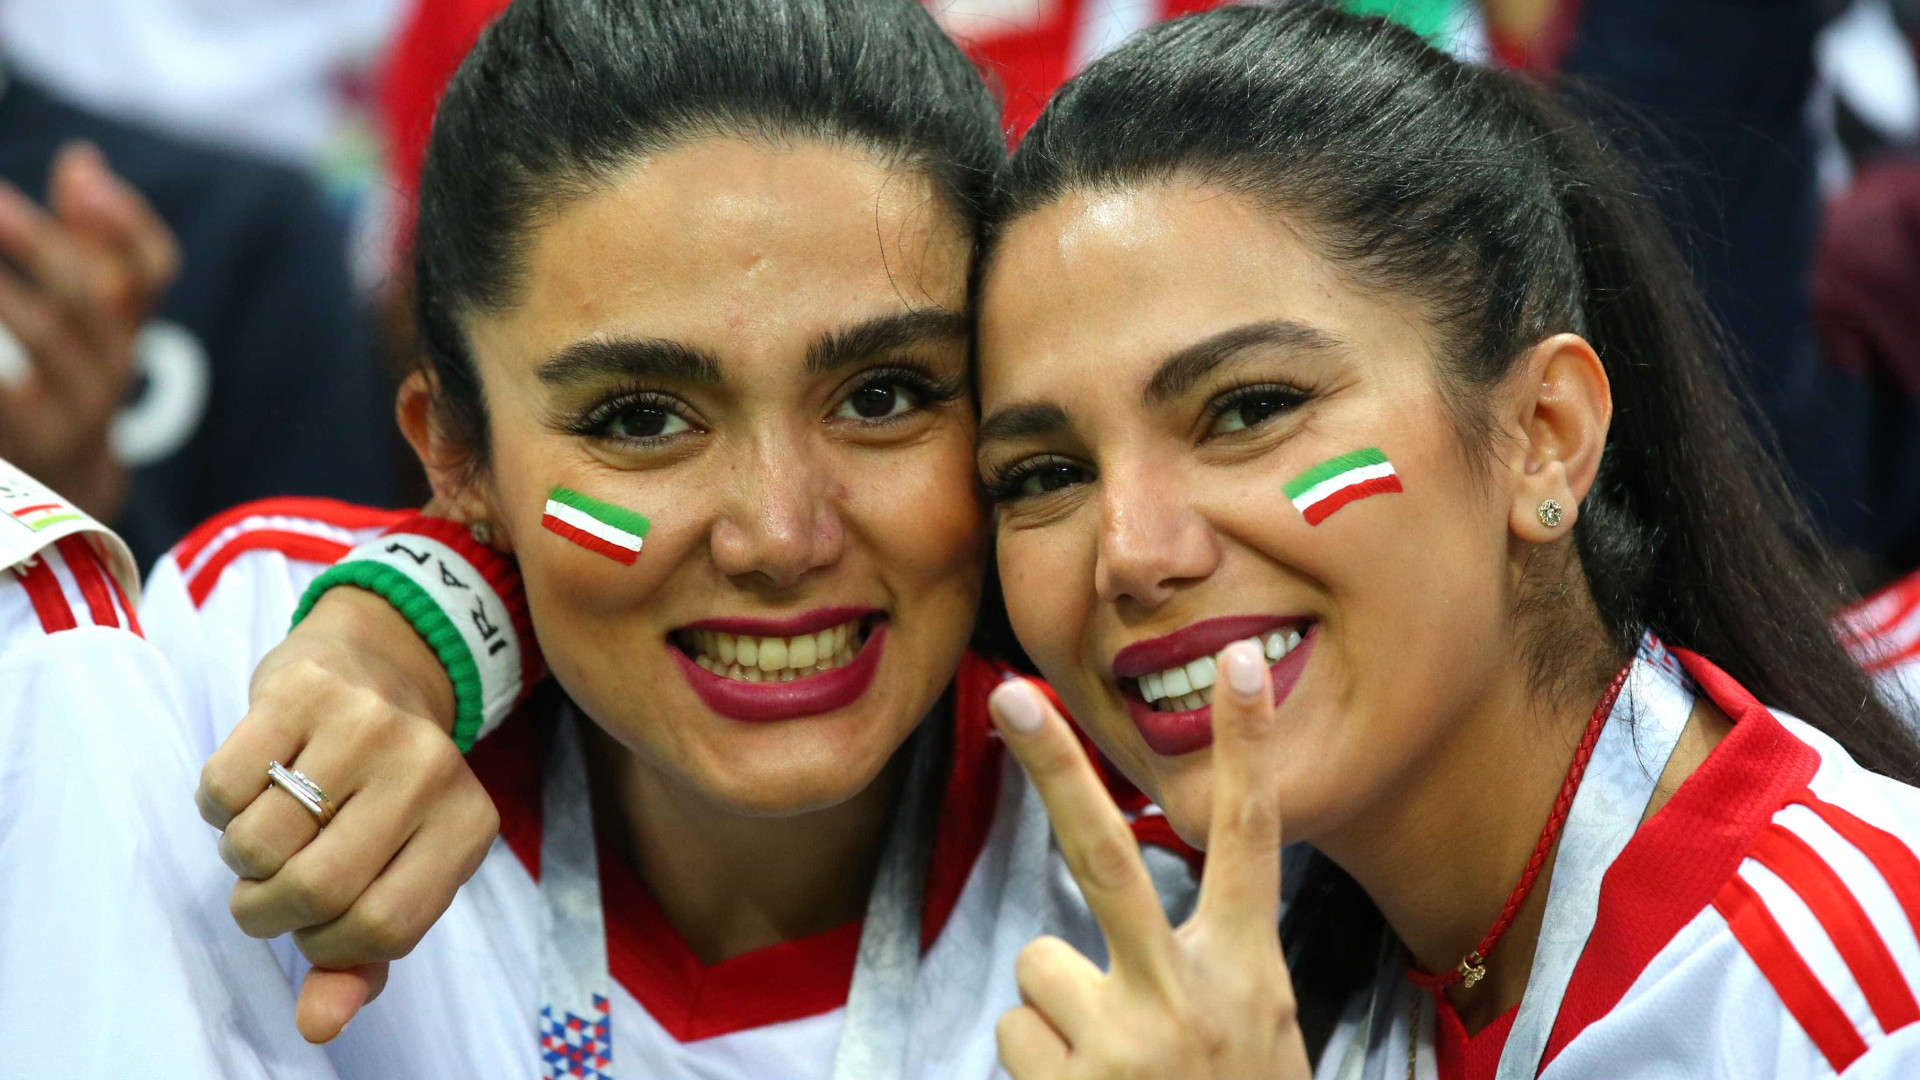 Mulheres iranianas celebram ‘liberdade’ nos estádios da Copa; fotos